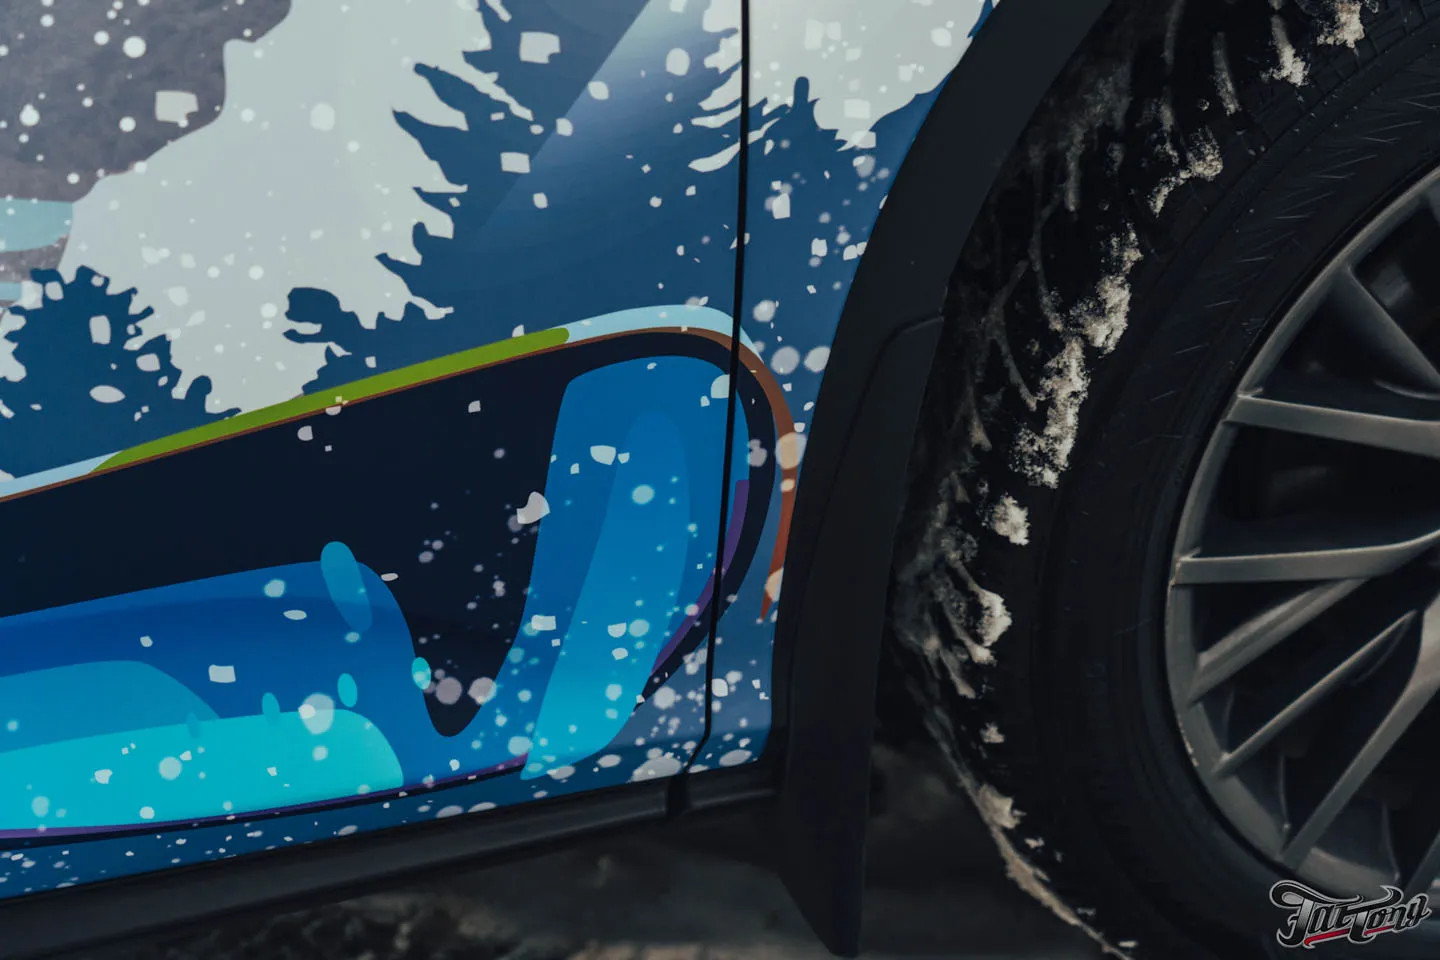 Снежный дизайн: оклеили винилографией Lexus RX350